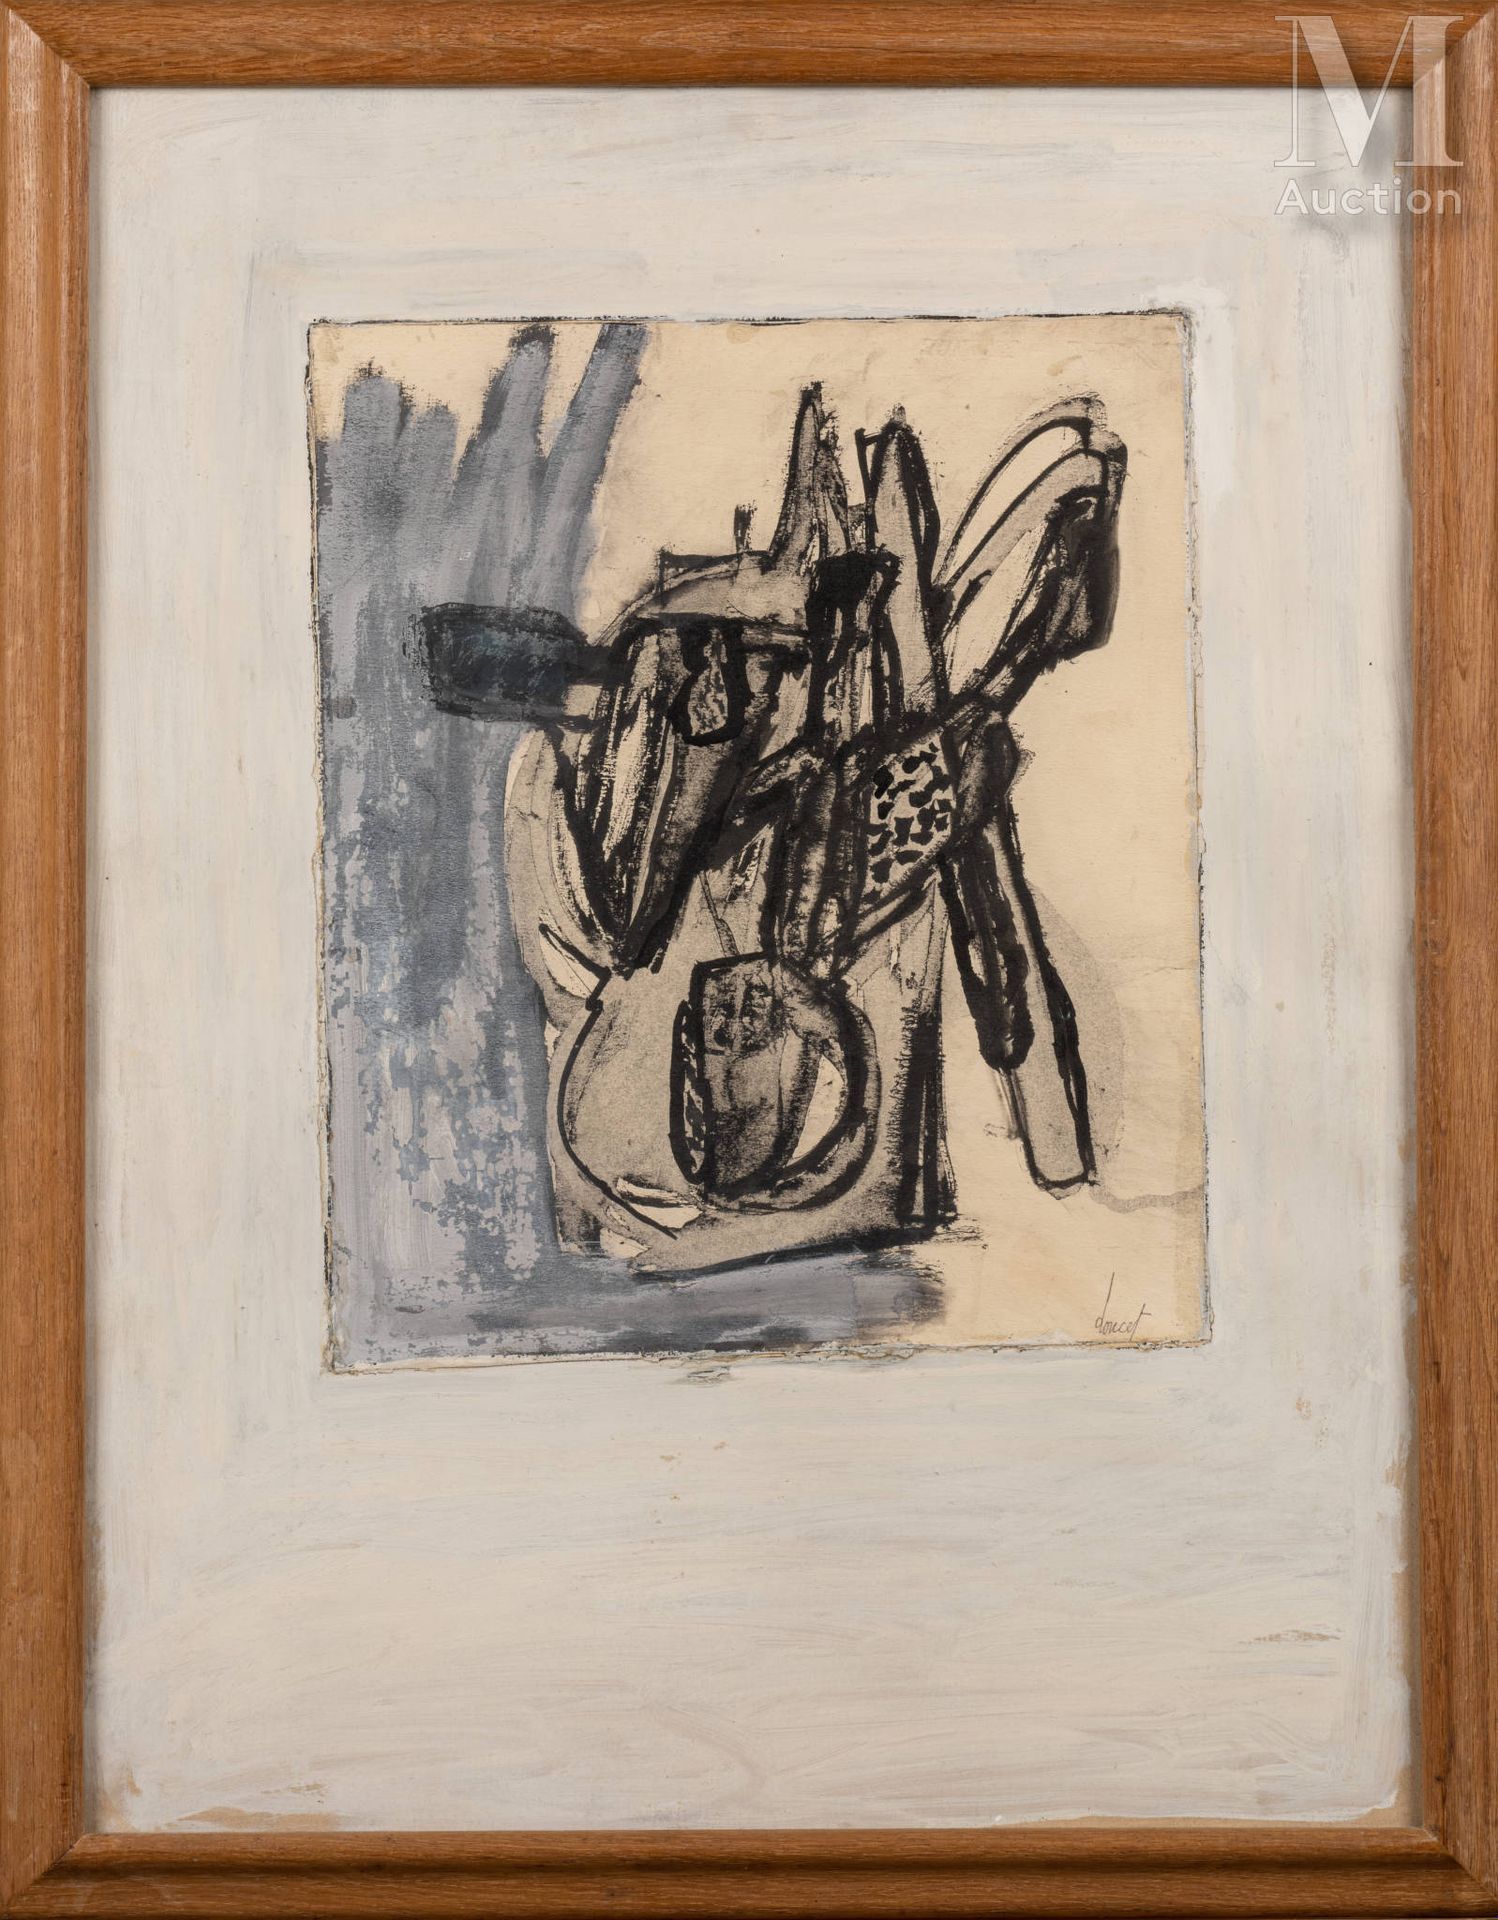 Jacques DOUCET (1924-1994) 无题》，1962年

裱在纸板上的水粉、墨汁和水墨画，在构图中签名

64 x 49 厘米



出处 :&hellip;